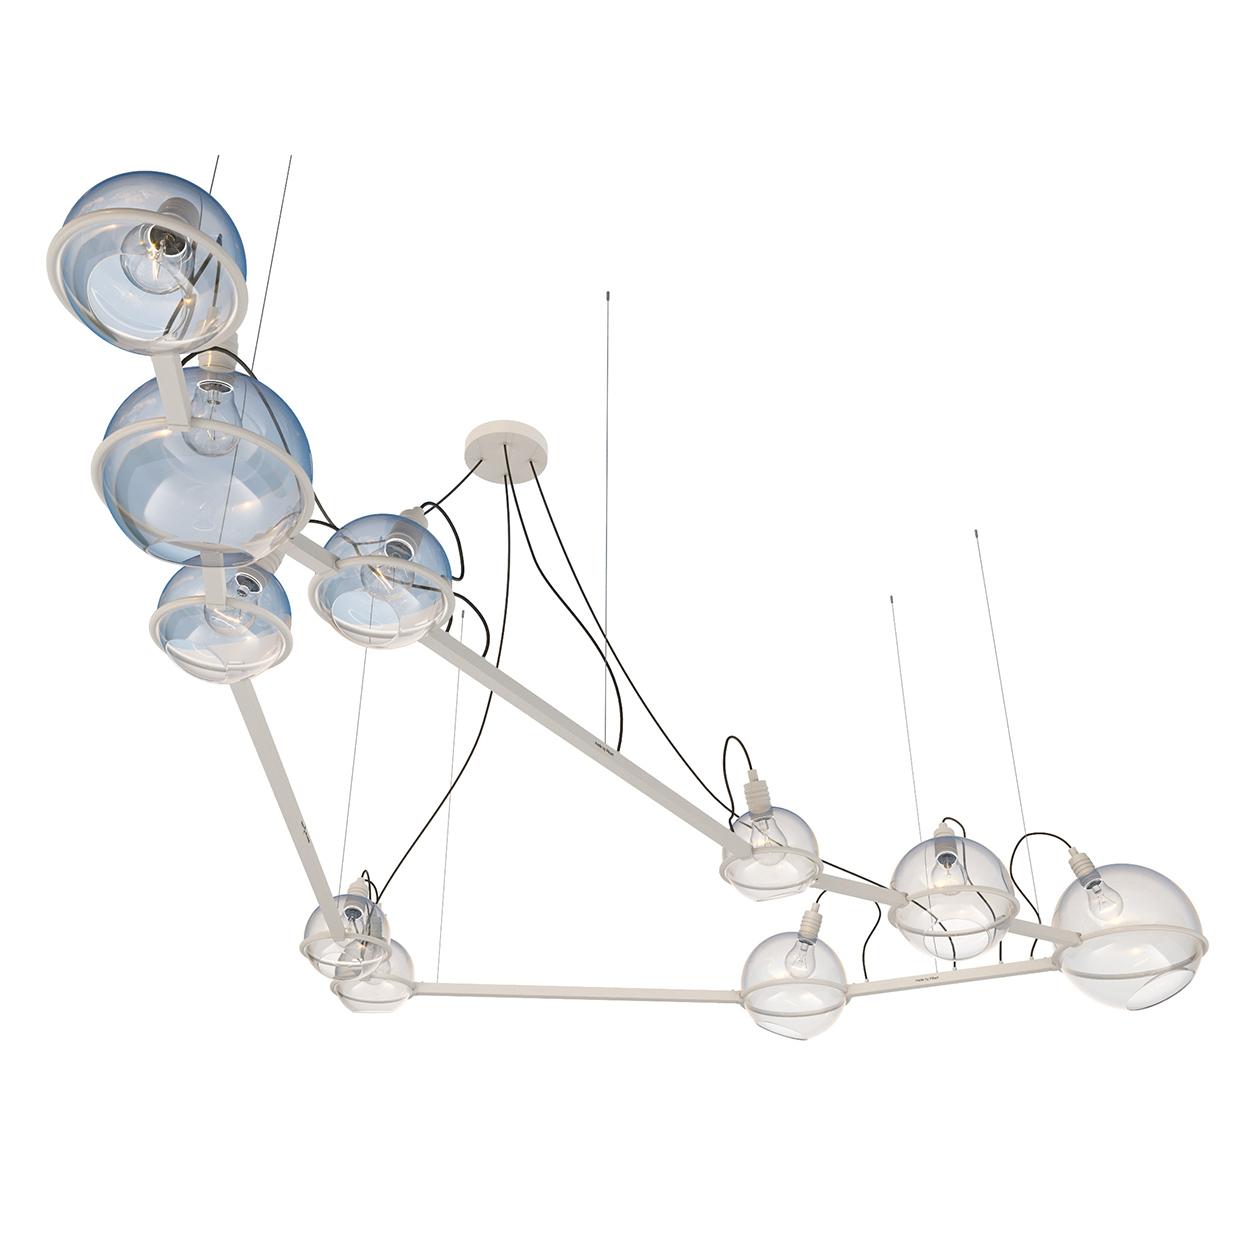 Capricornus lamp, SKU. 20726 by Pikartlights 3d model